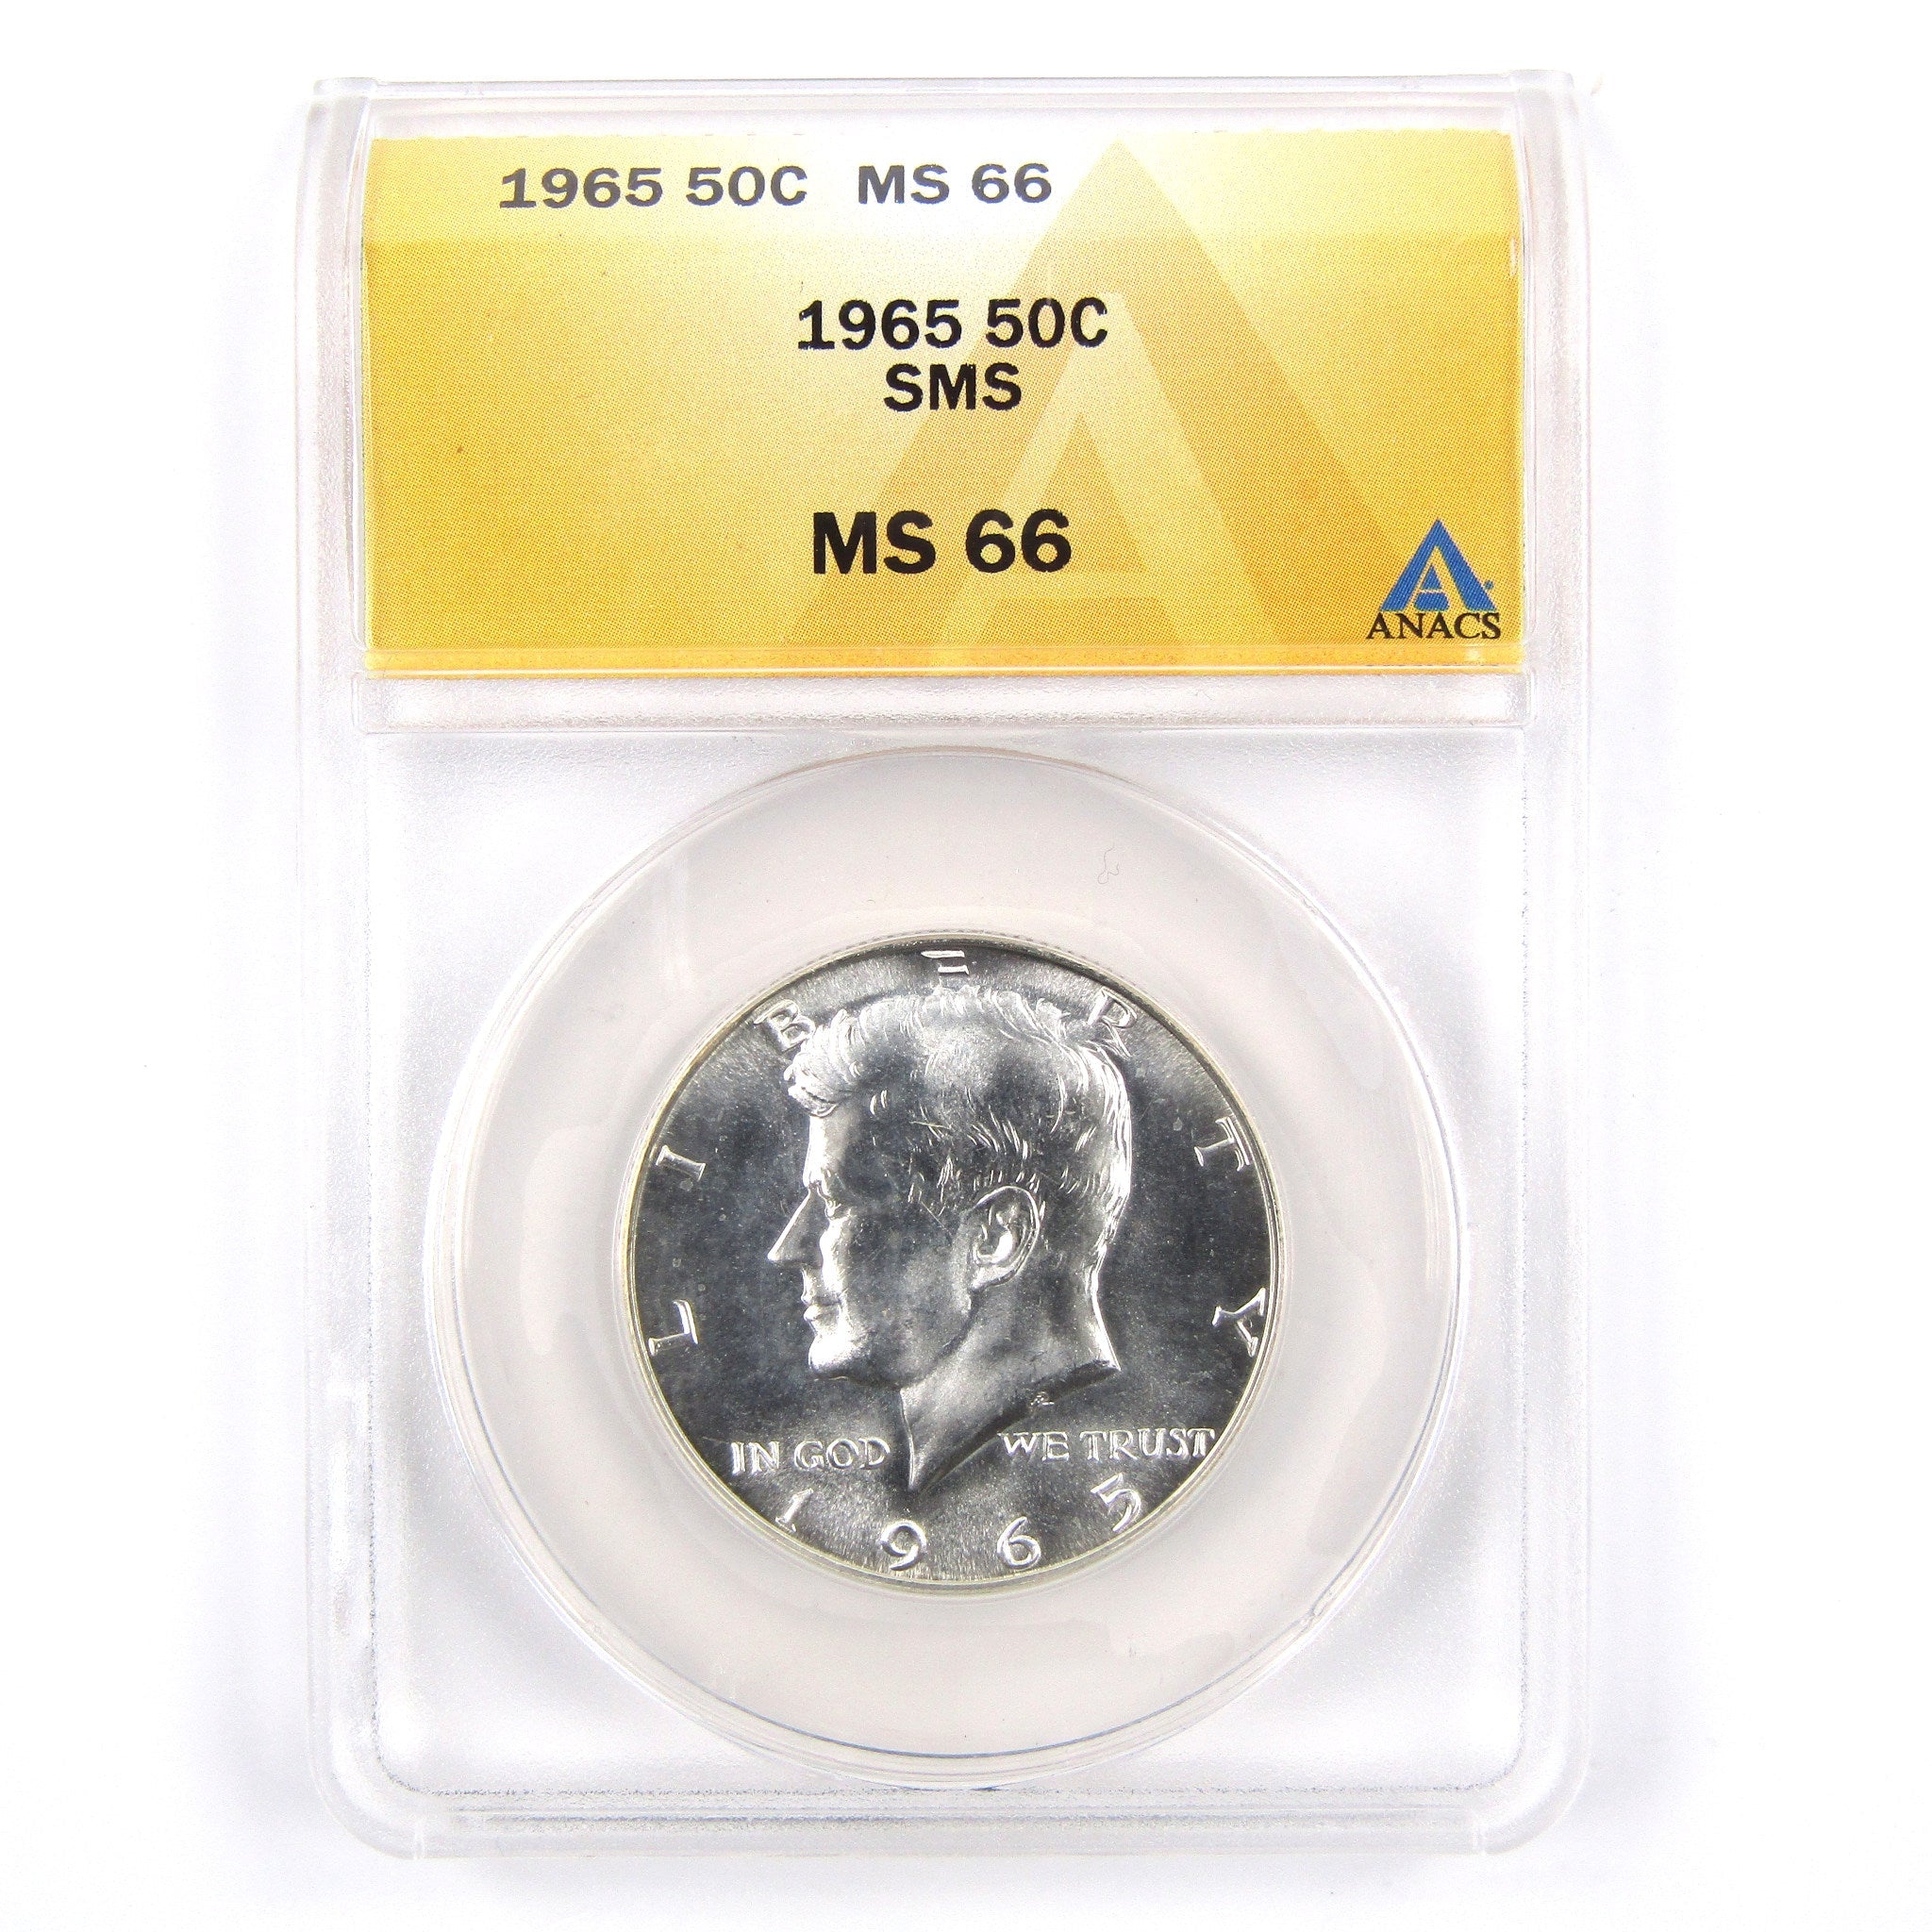 1965 SMS Kennedy Half Dollar MS 66 ANACS 40% Silver SKU:CPC2297